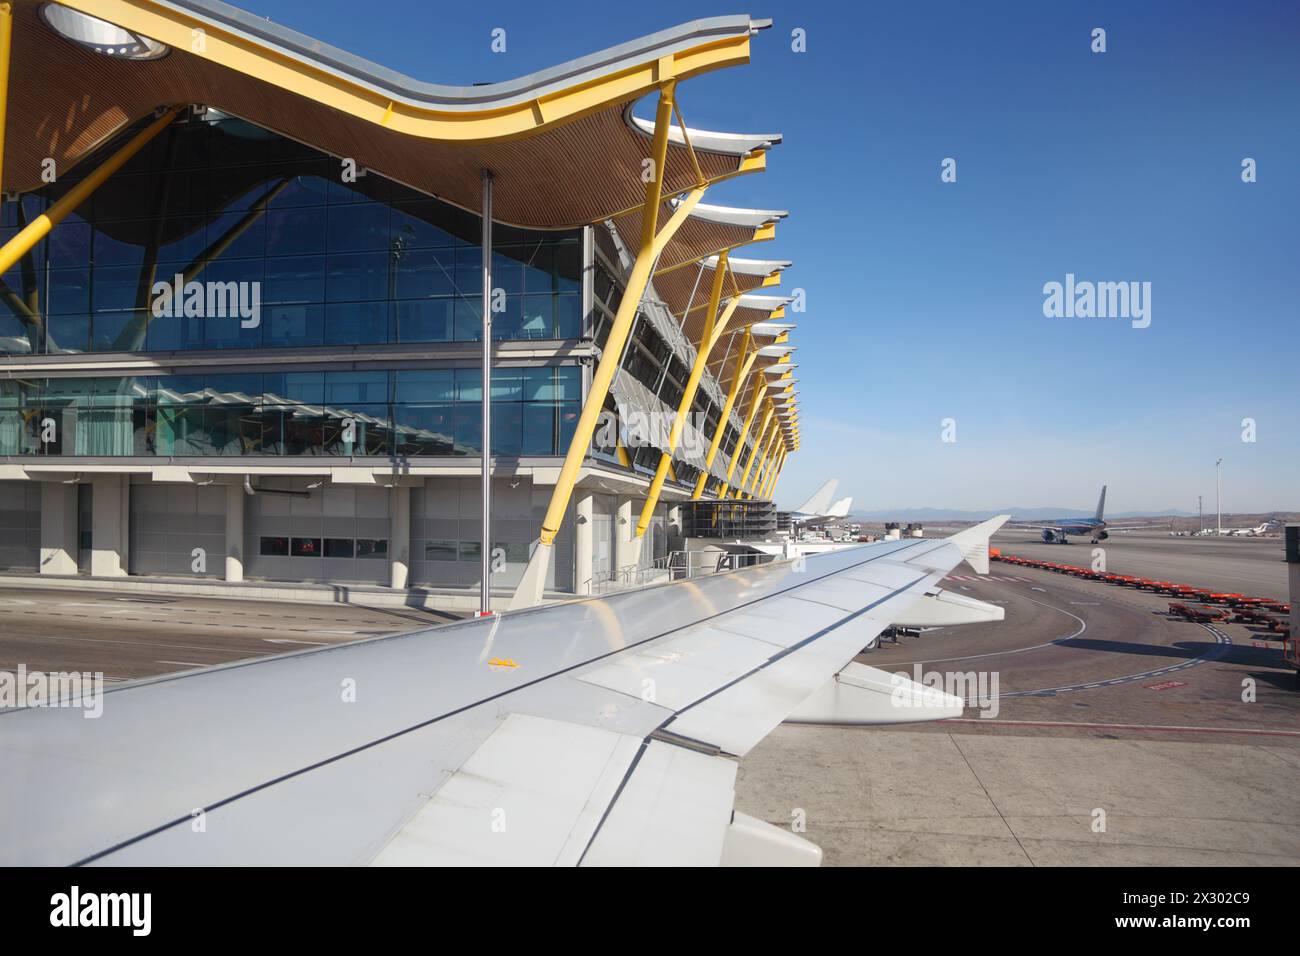 MADRID - 7 MARZO: Ala di aeromobili e edificio dell'aeroporto Barajas di Madrid il 7 marzo 2012 a Madrid, Spagna. L'Aeroporto Barajas di Madrid prende il quarto posto più trafficato Foto Stock